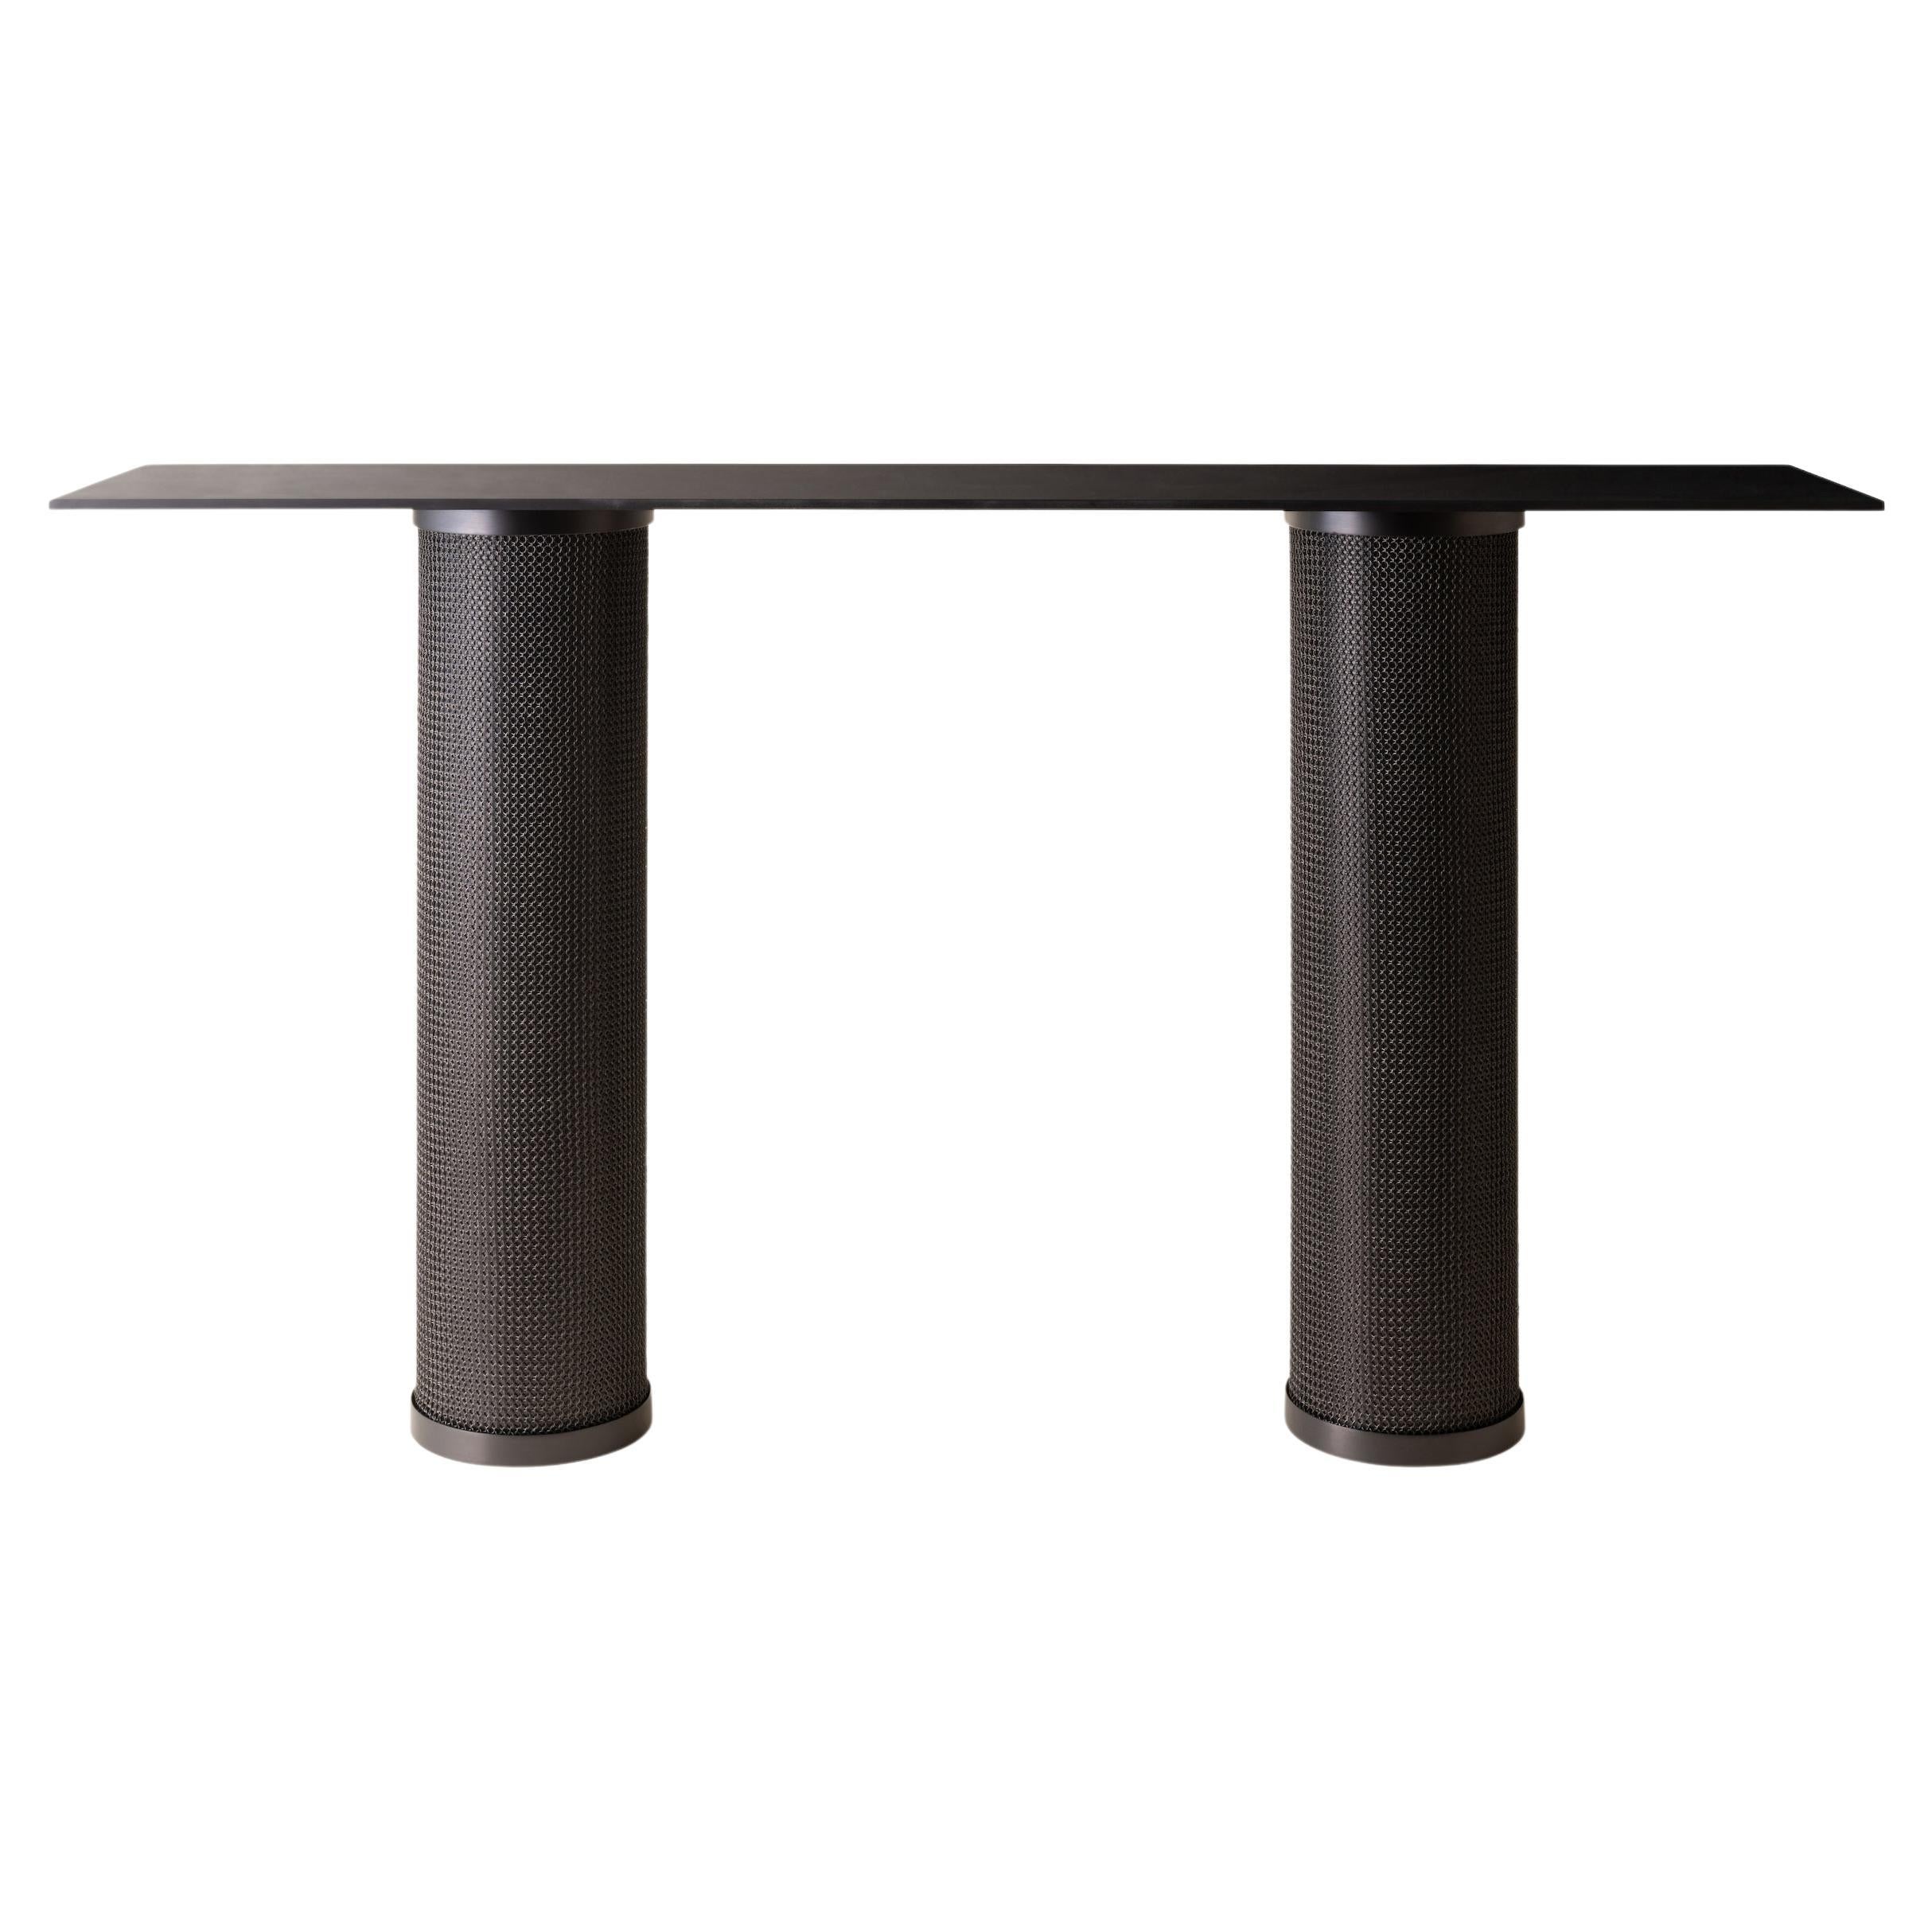 Table console Konekt Armor avec cotte de mailles, en noir satiné